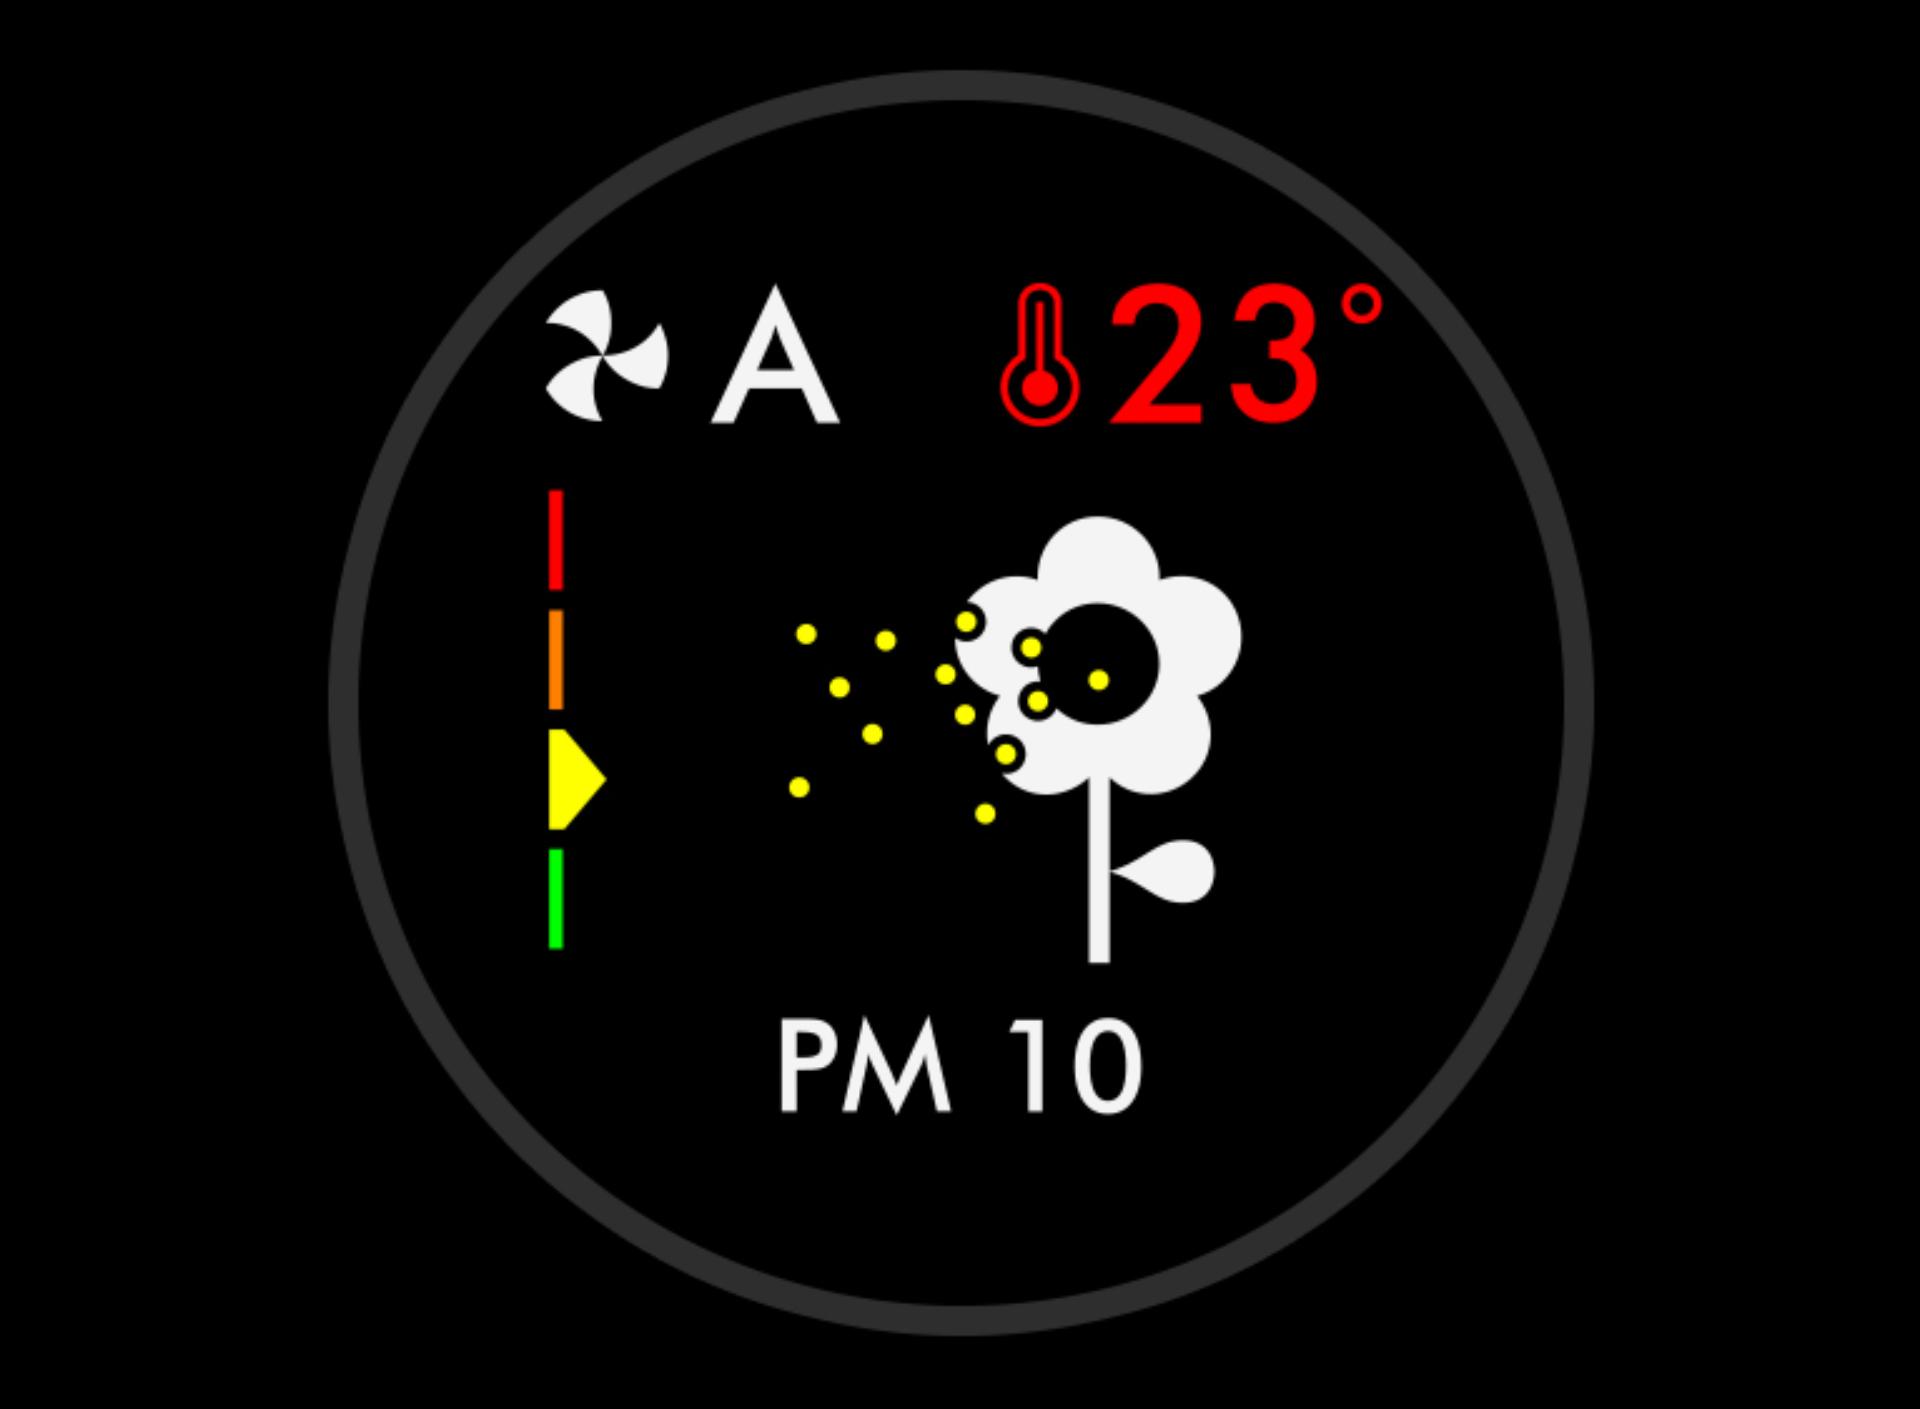 PM10 pylu na LCD obrazovce 